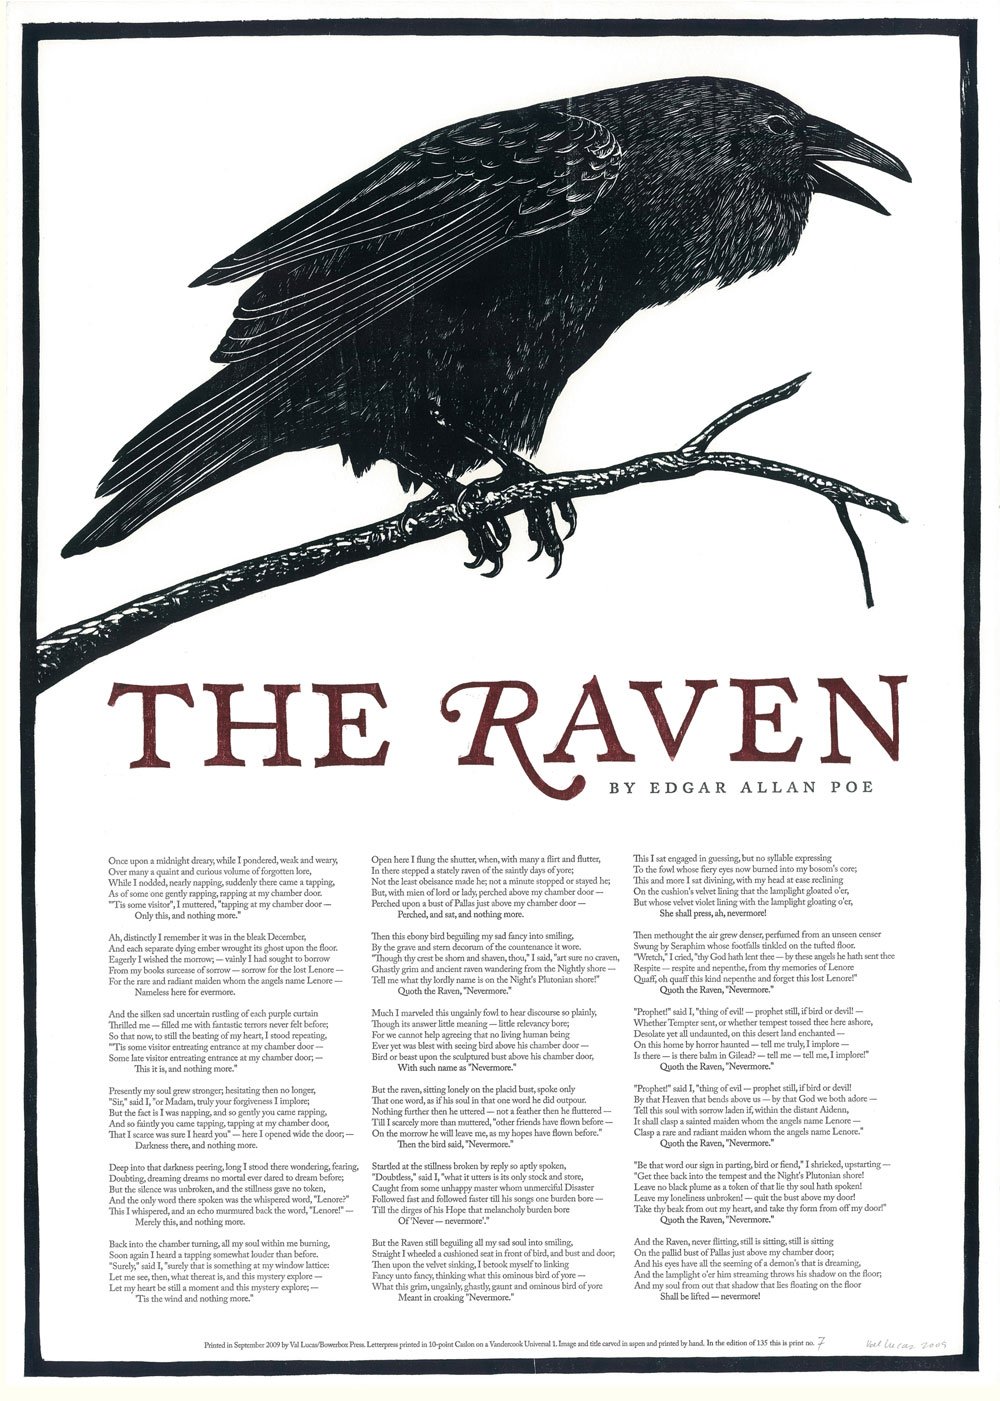 Image of "The Raven" Woodcut Broadside